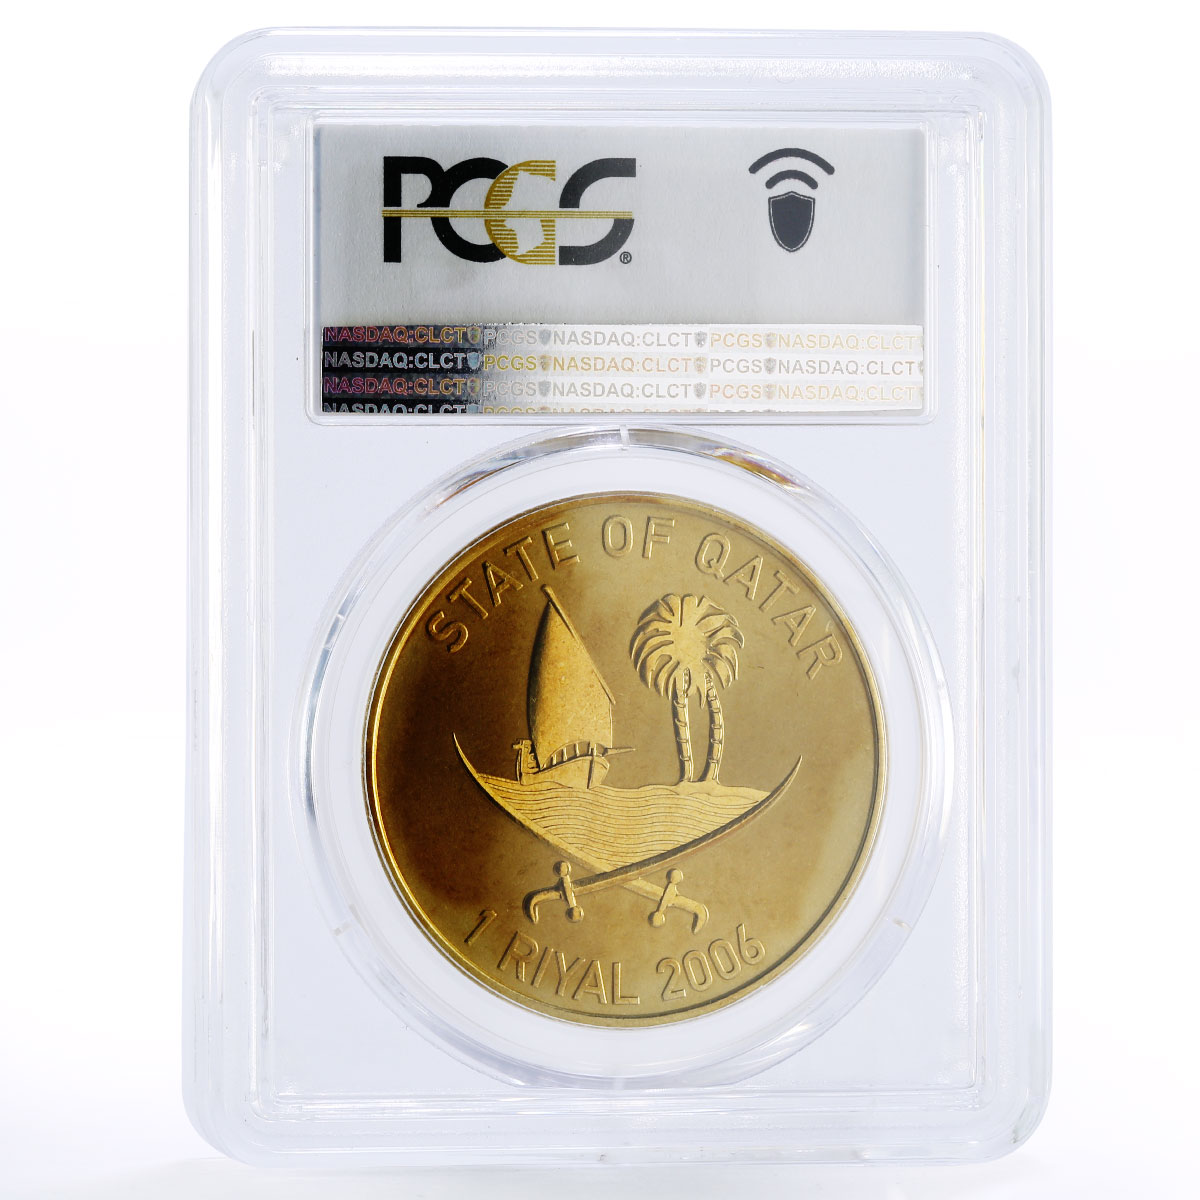 Qatar 1 riyal 15th Asian Games Torches MS68 PCGS aluminium-bronze coin 2006